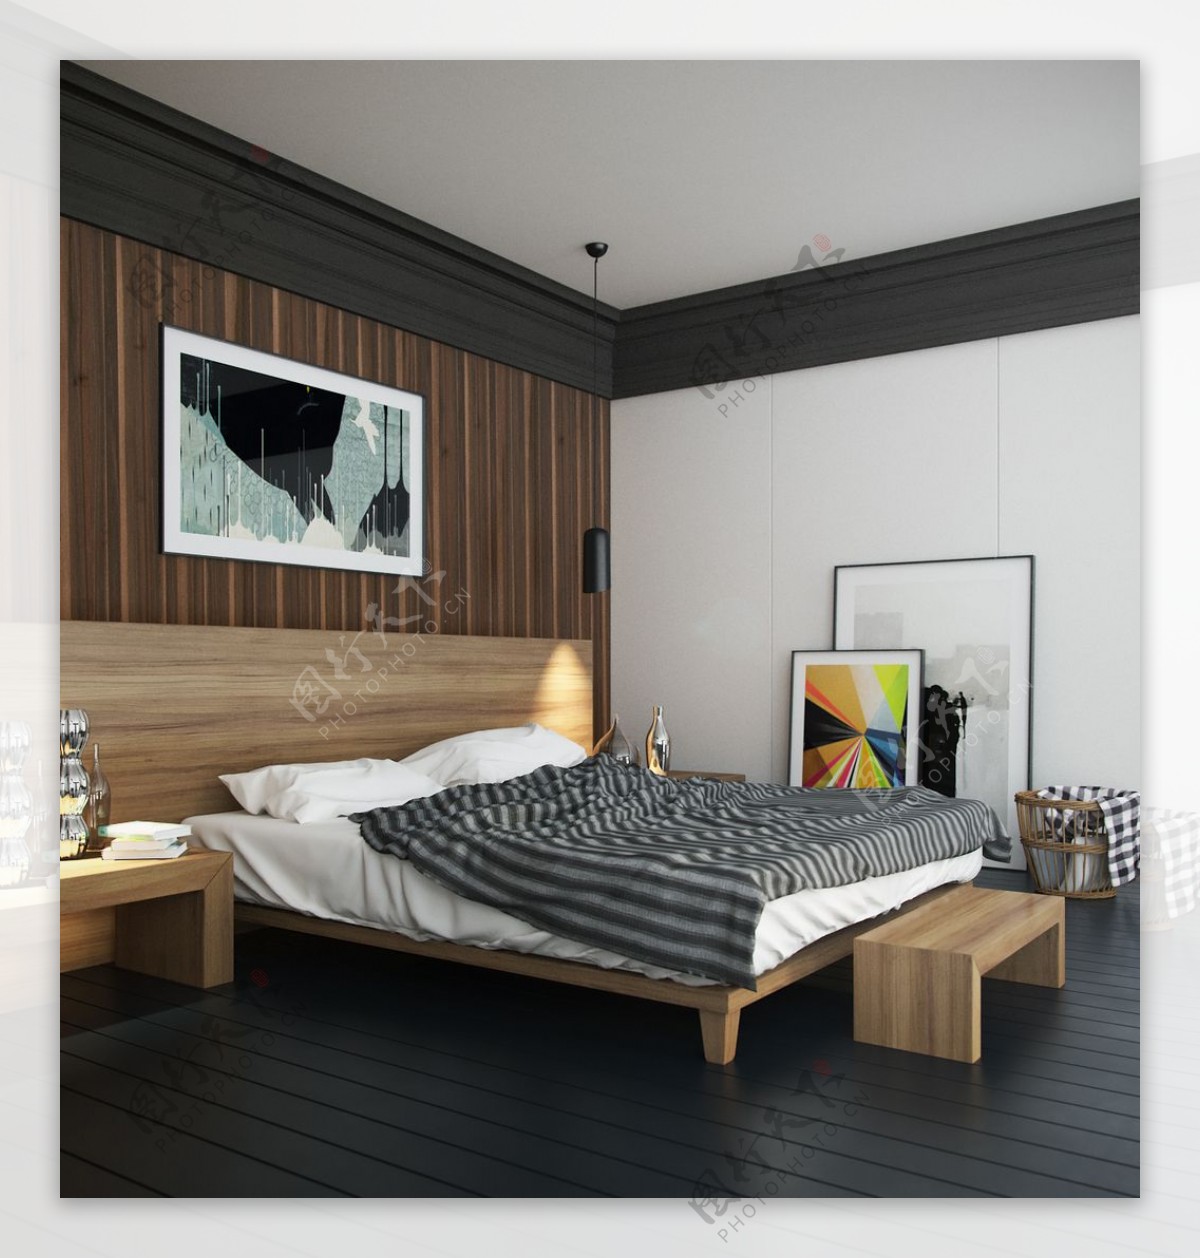 卧室简约木质装修风格max效果图